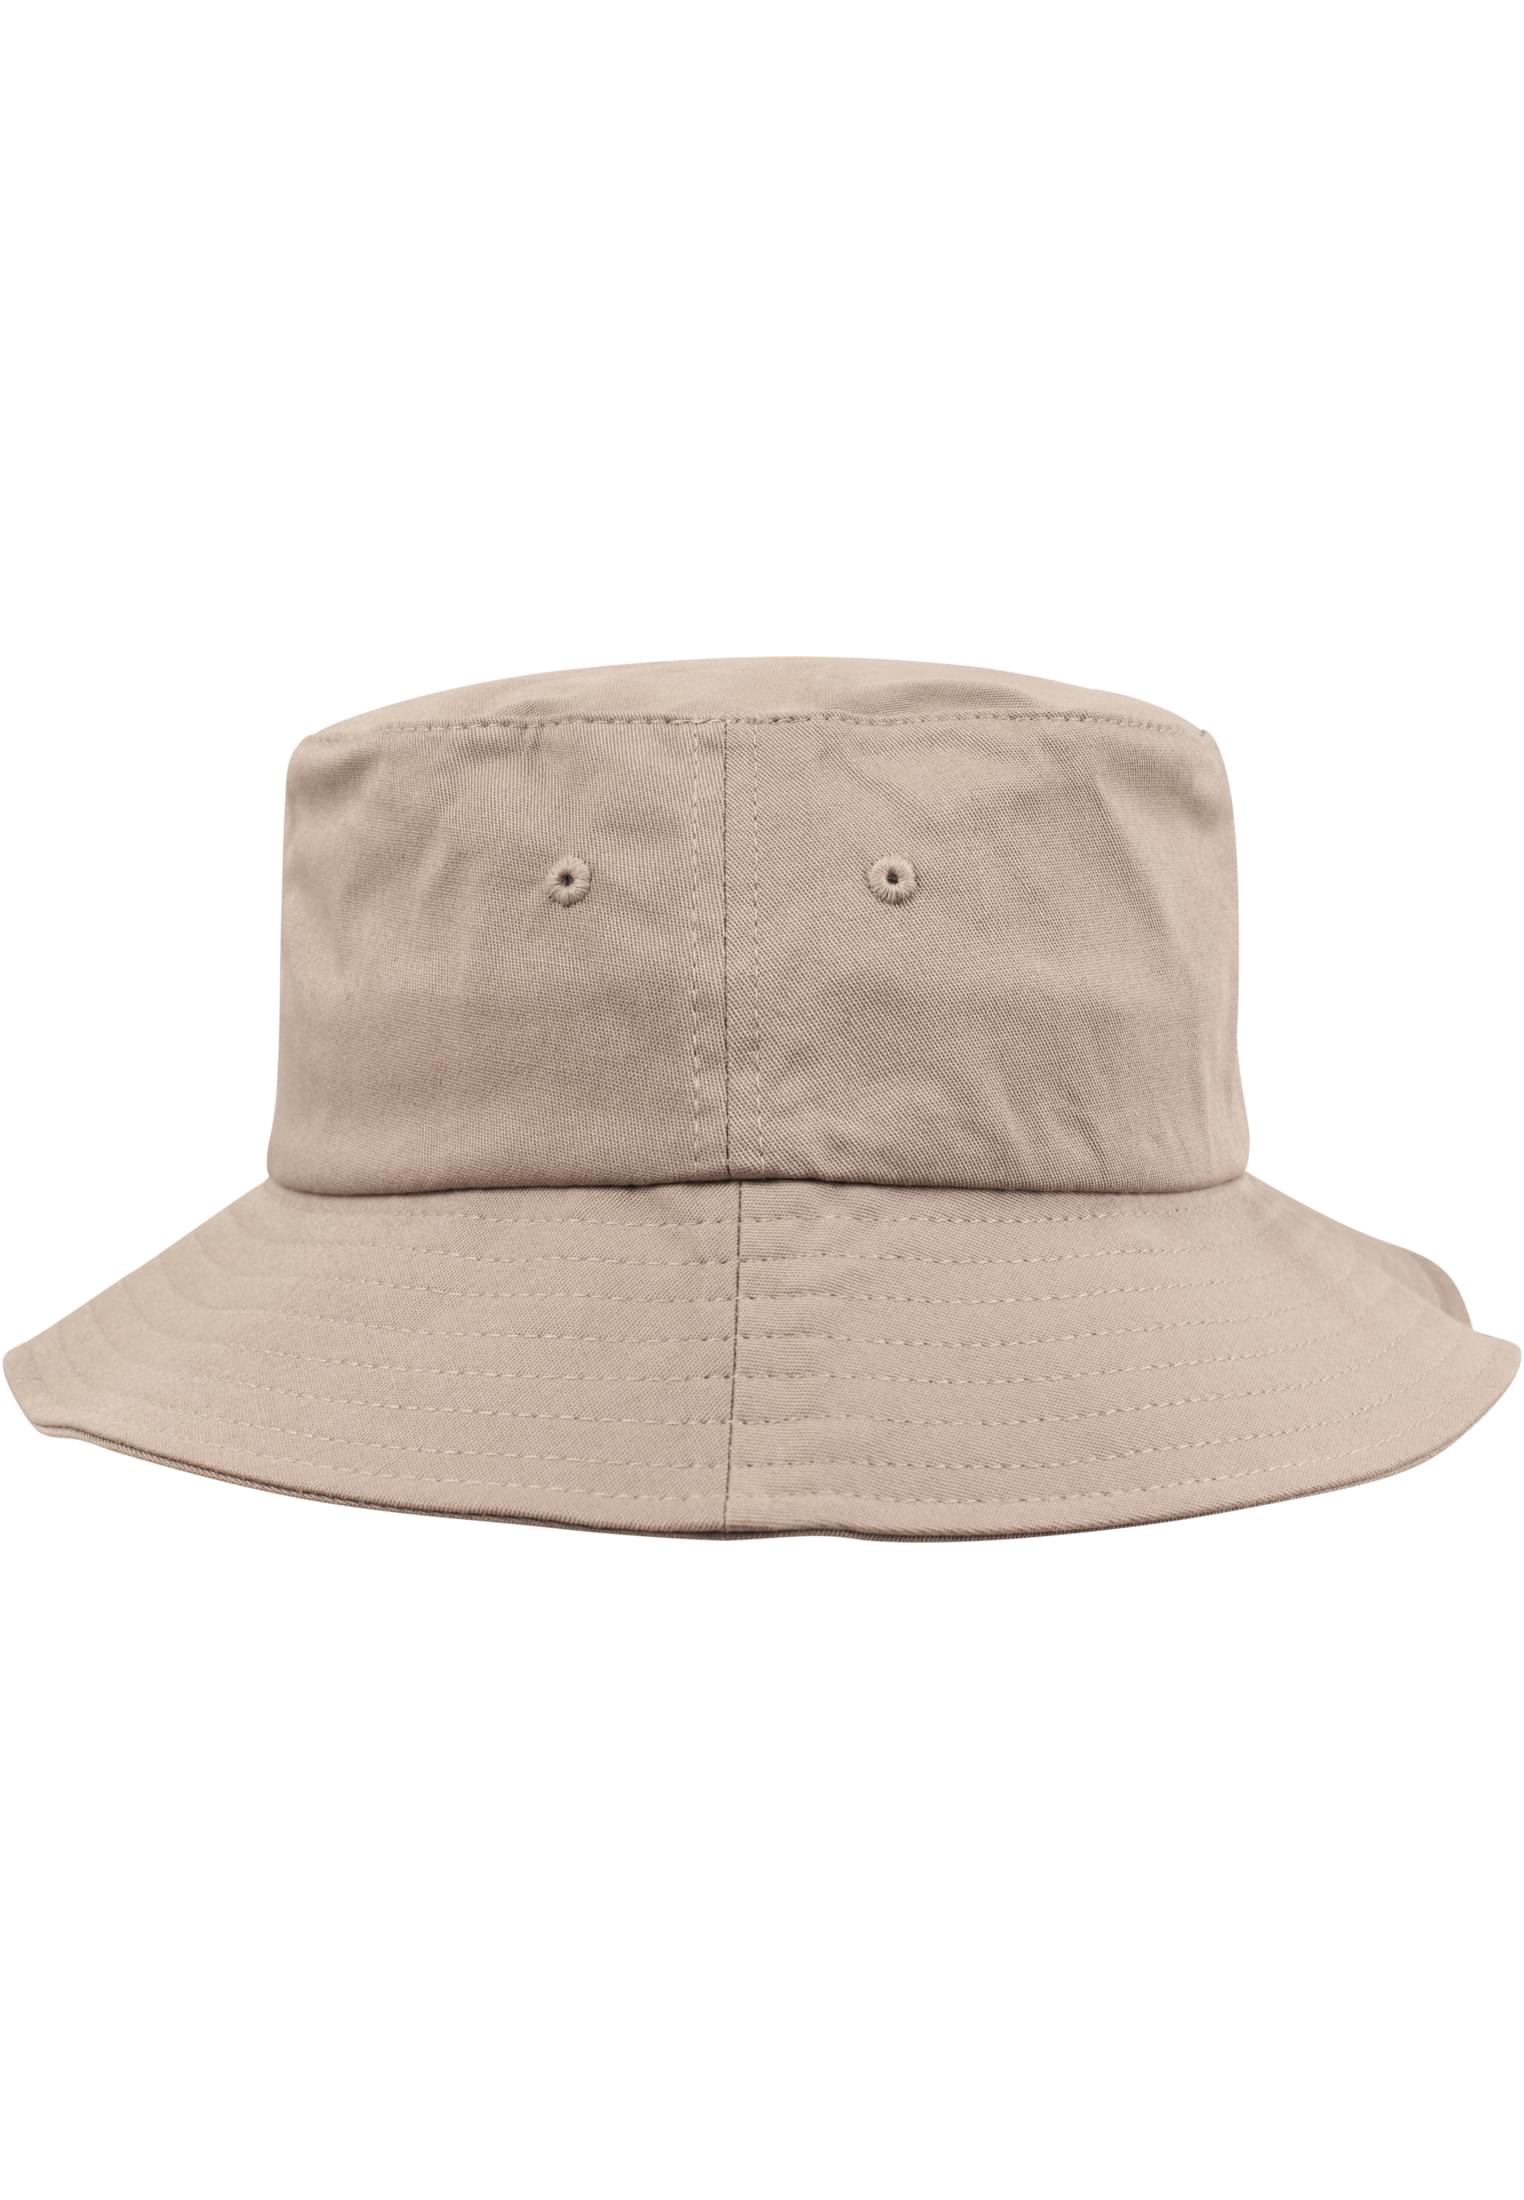 Hat-5003 Twill Cotton Flexfit Bucket